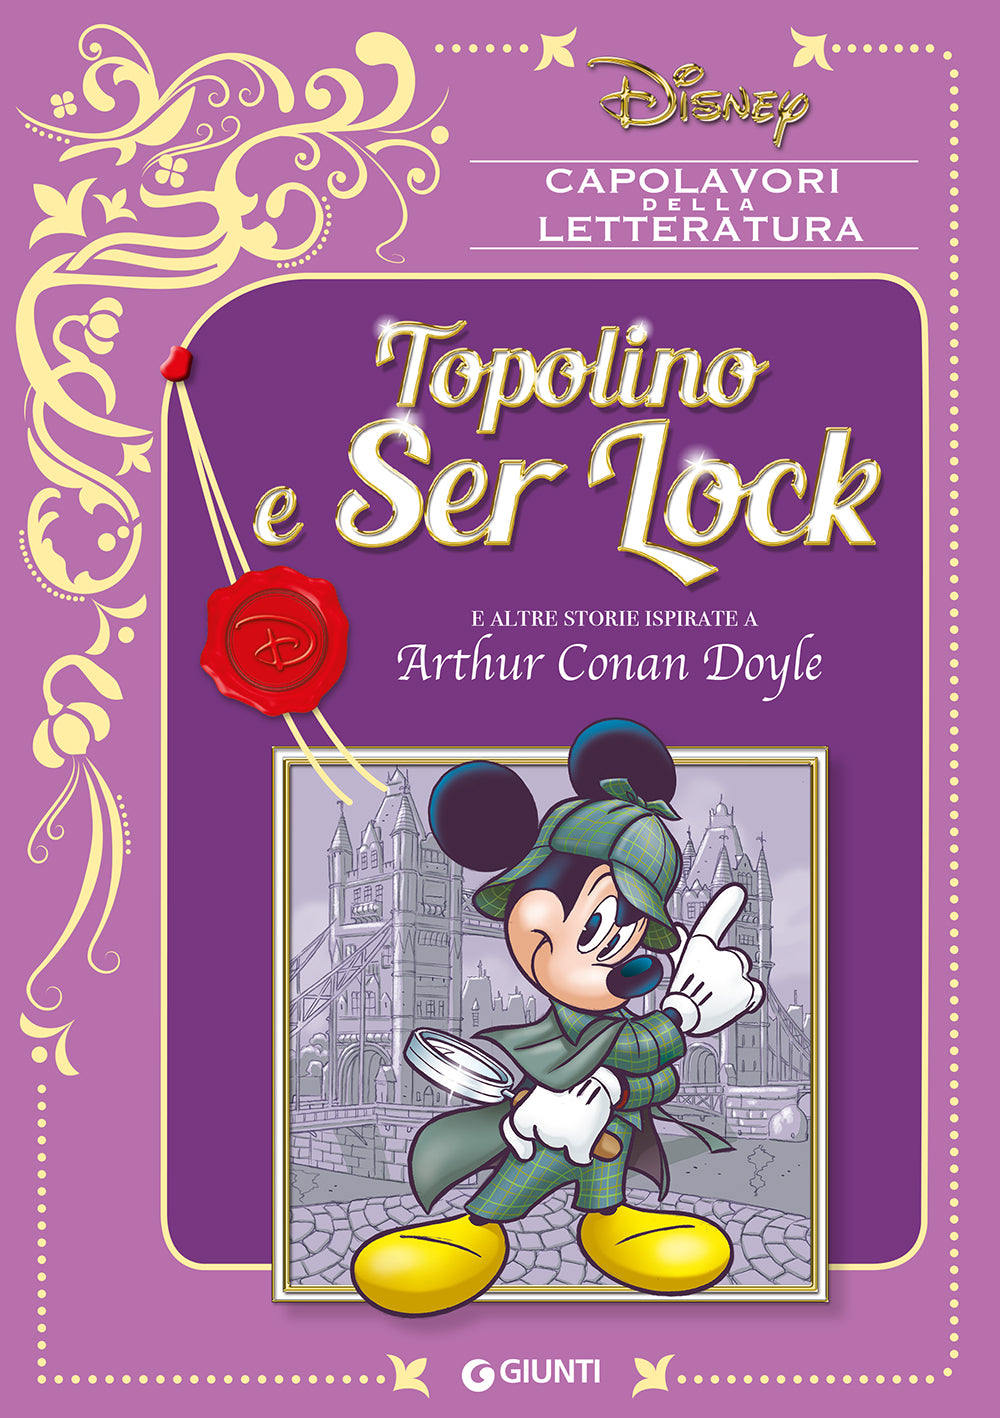 Topolino e Ser Lock::E altre storie ispirate a Arthur Conan Doyle